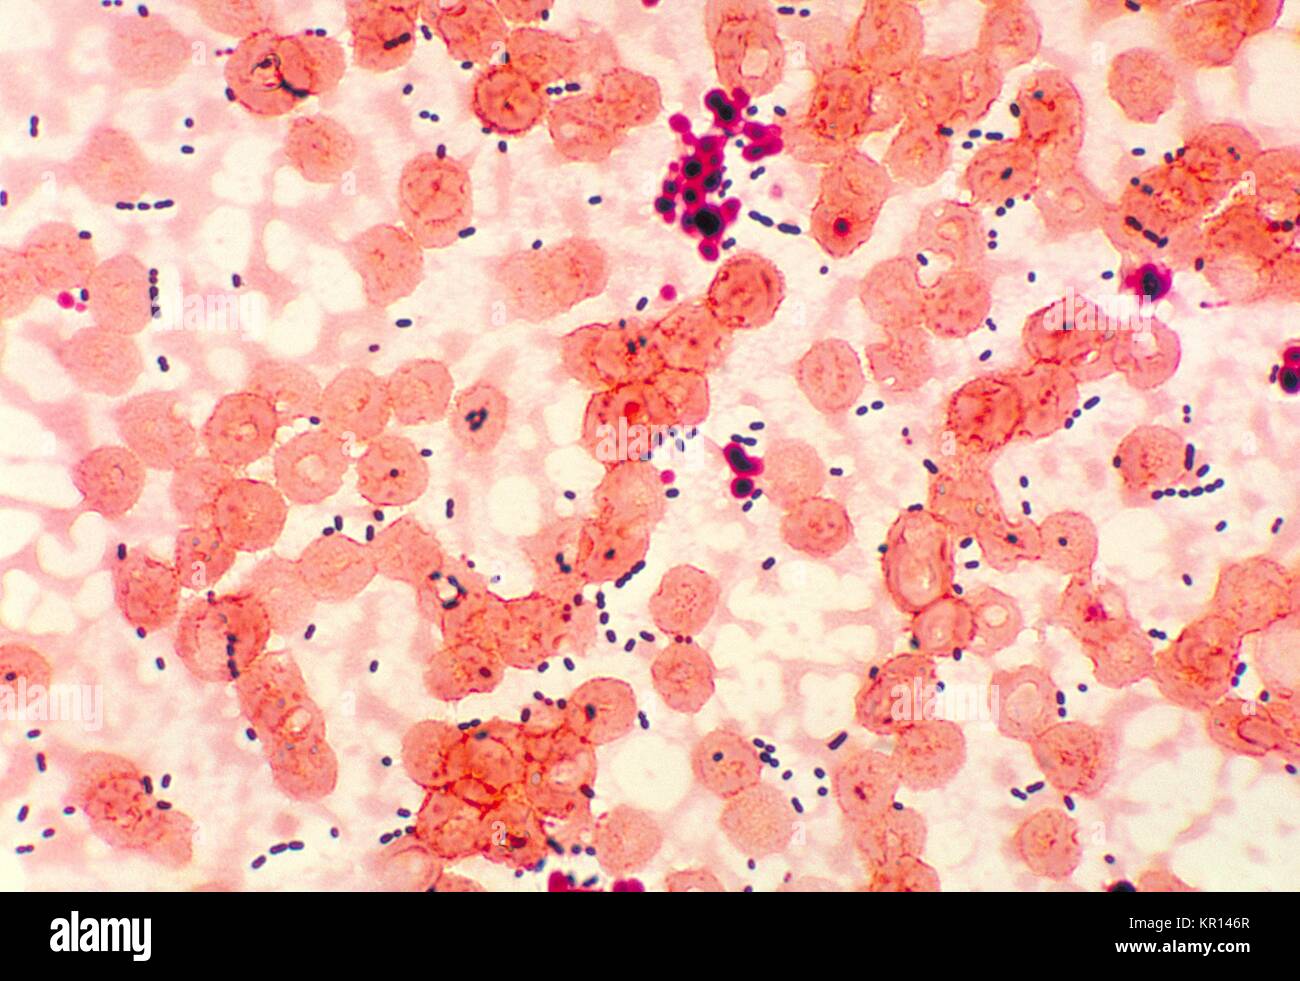 Questo fotomicrografia rivela cocci-sagomato Enterococcus sp, 1978. batteri  presi da una polmonite paziente. Enterococcus sp. è un comune di batteri  gram-positivi che possono essere normalmente trovati nell intestino e  femmina genitale. Questi